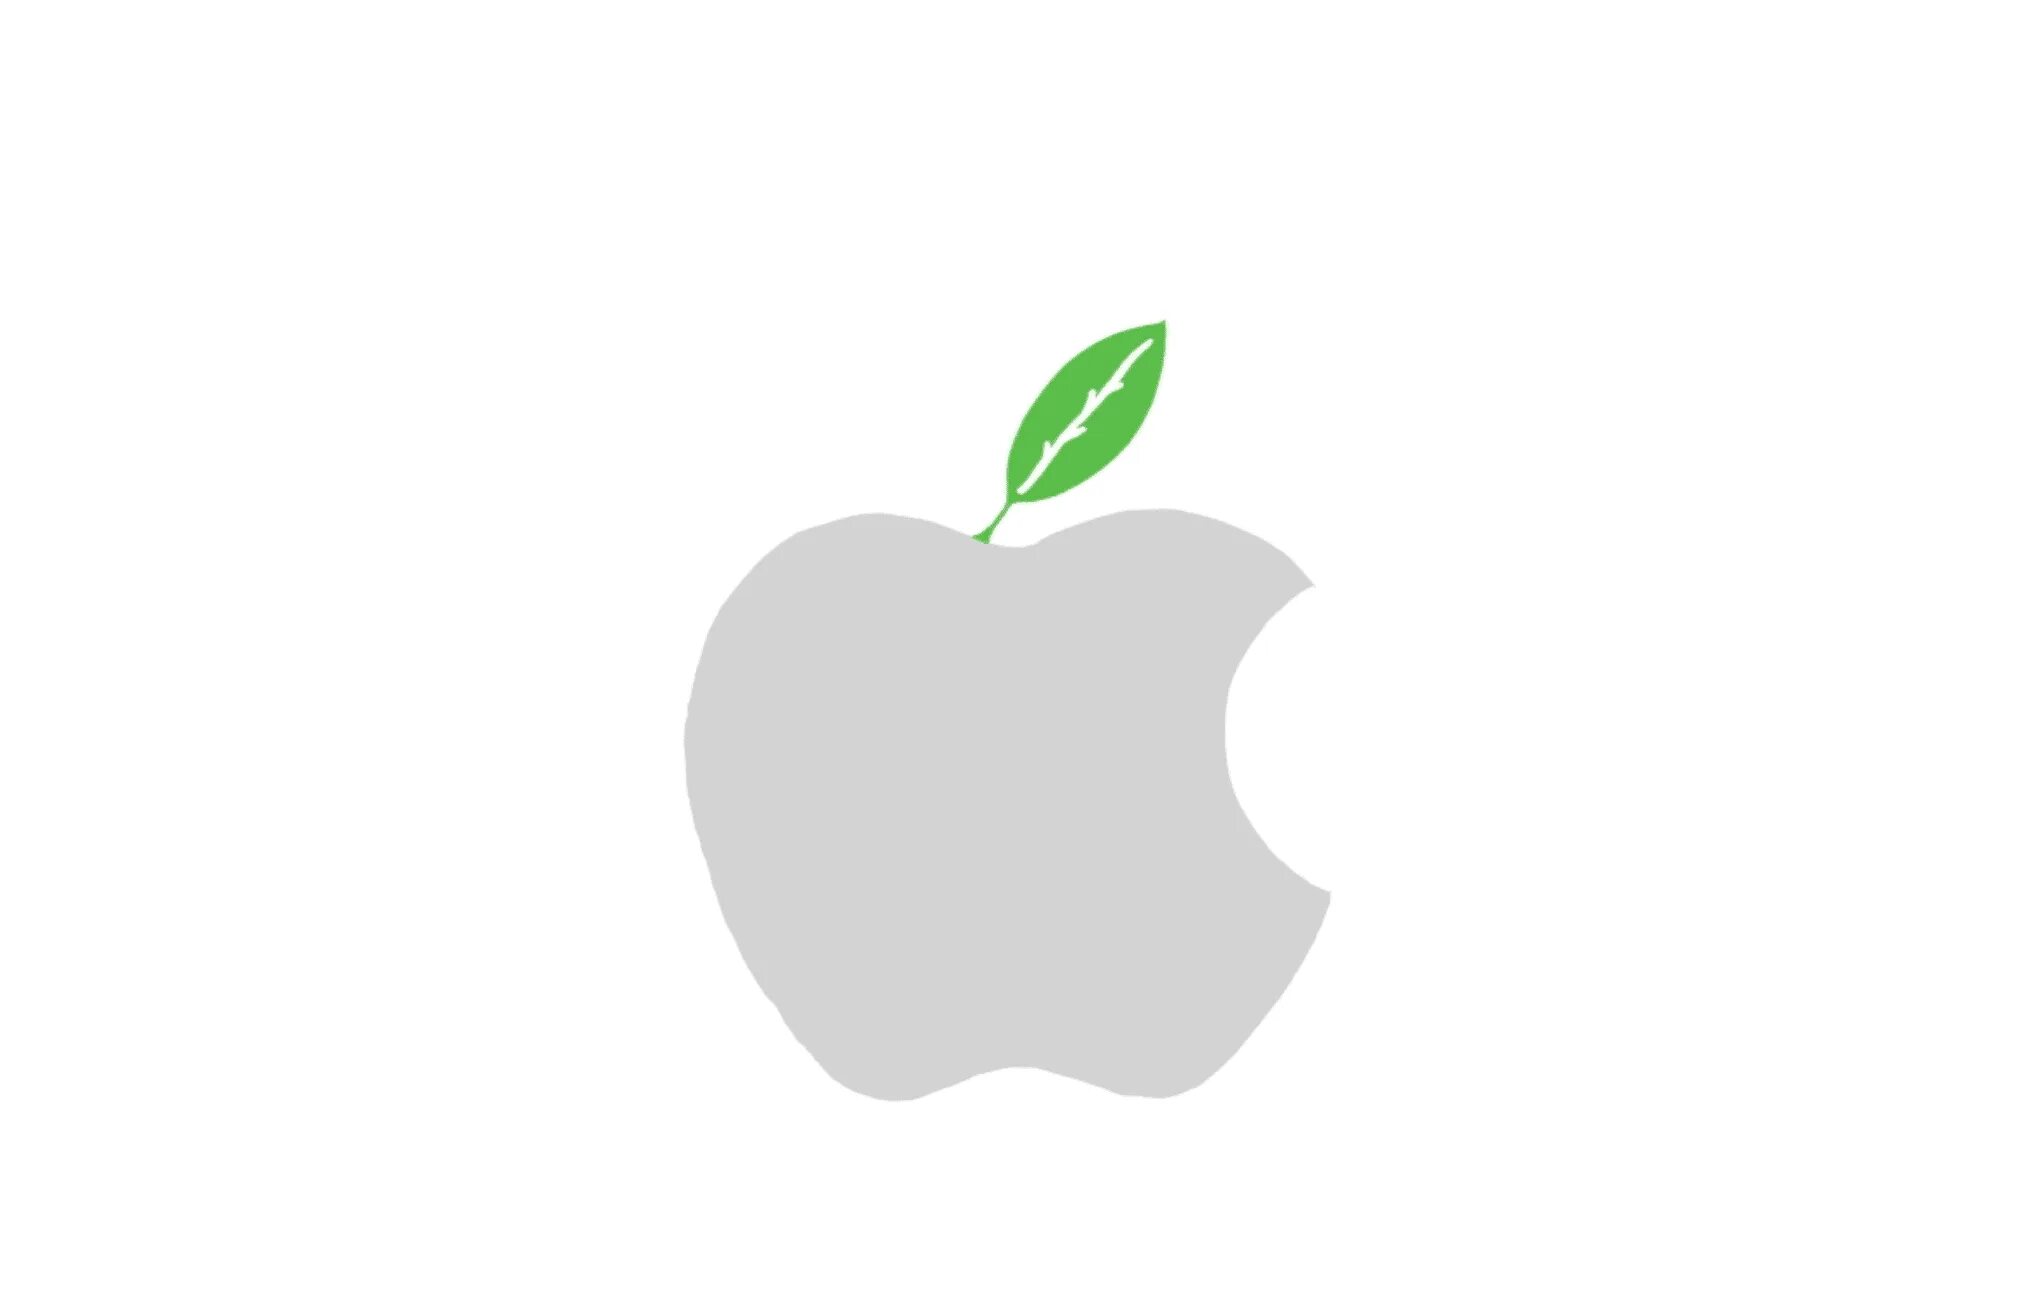 Создание логотип на айфоне. Значок айфона. Значок айфона яблоко. Айфон яблоко раскраска. Срисовать логотип айфон.